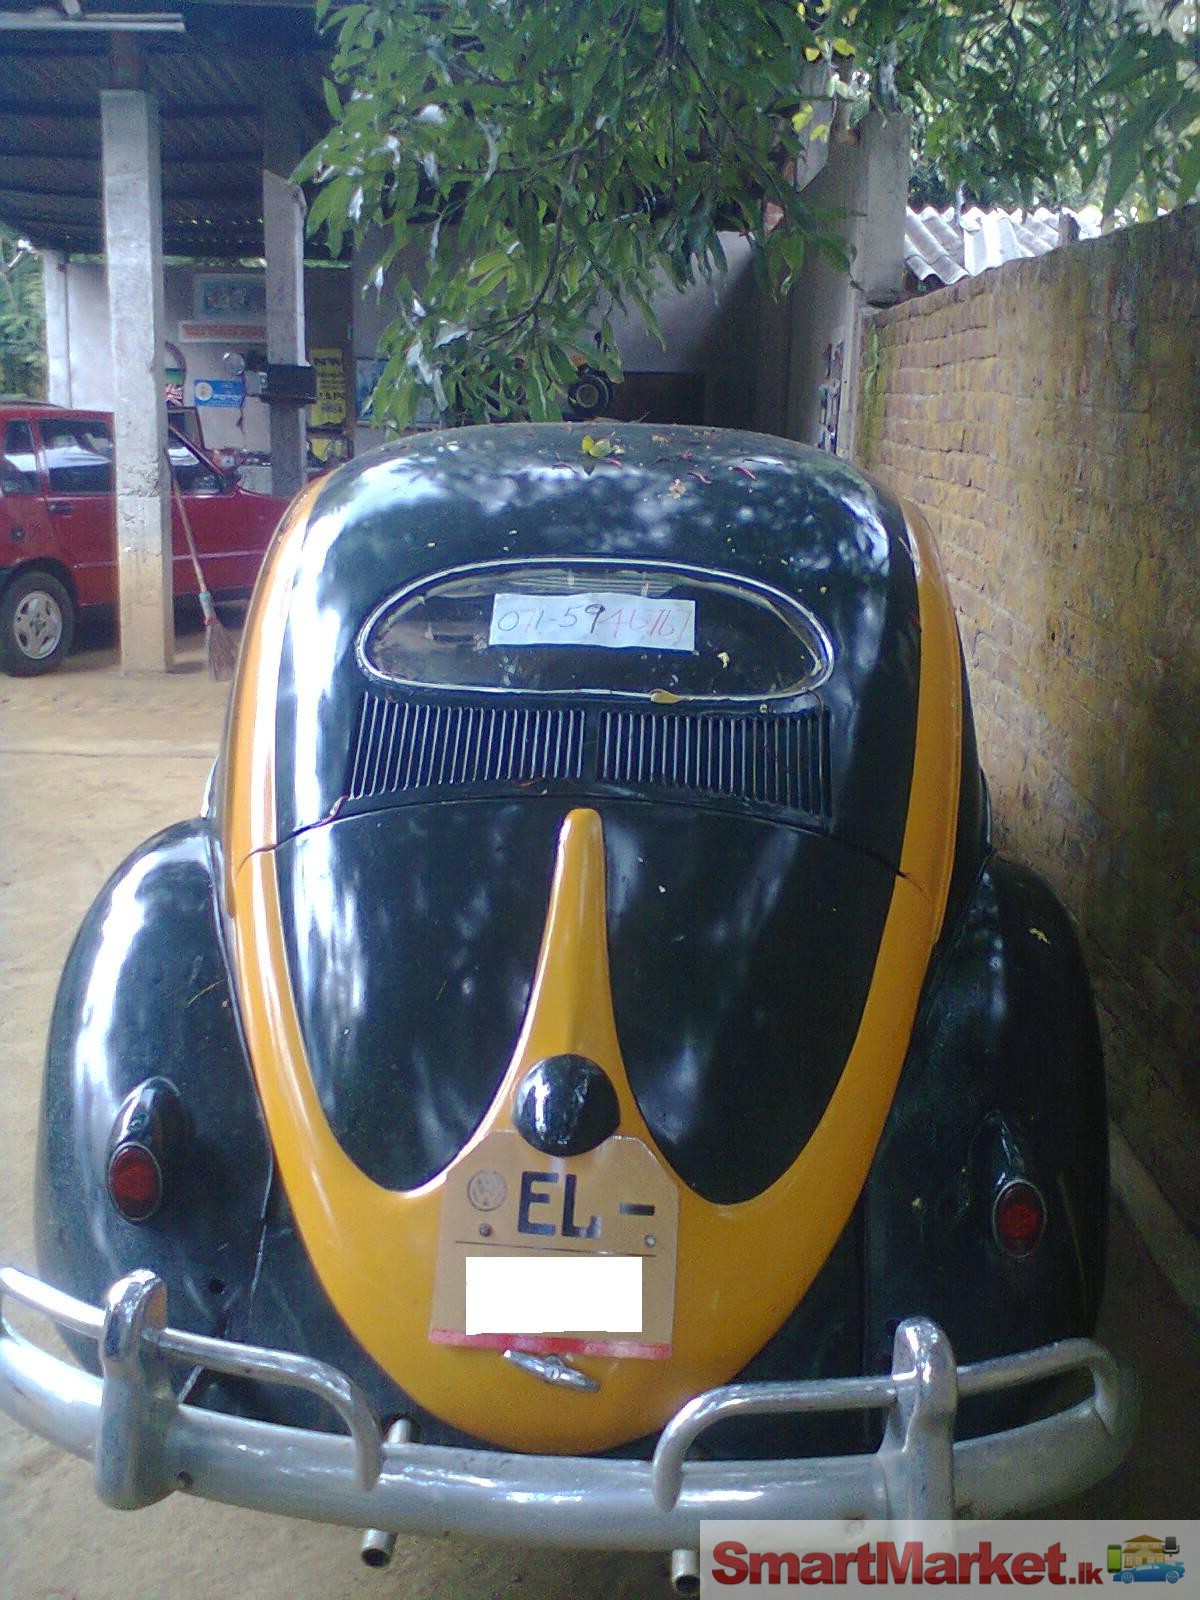 Volkswagen Beetle for sale